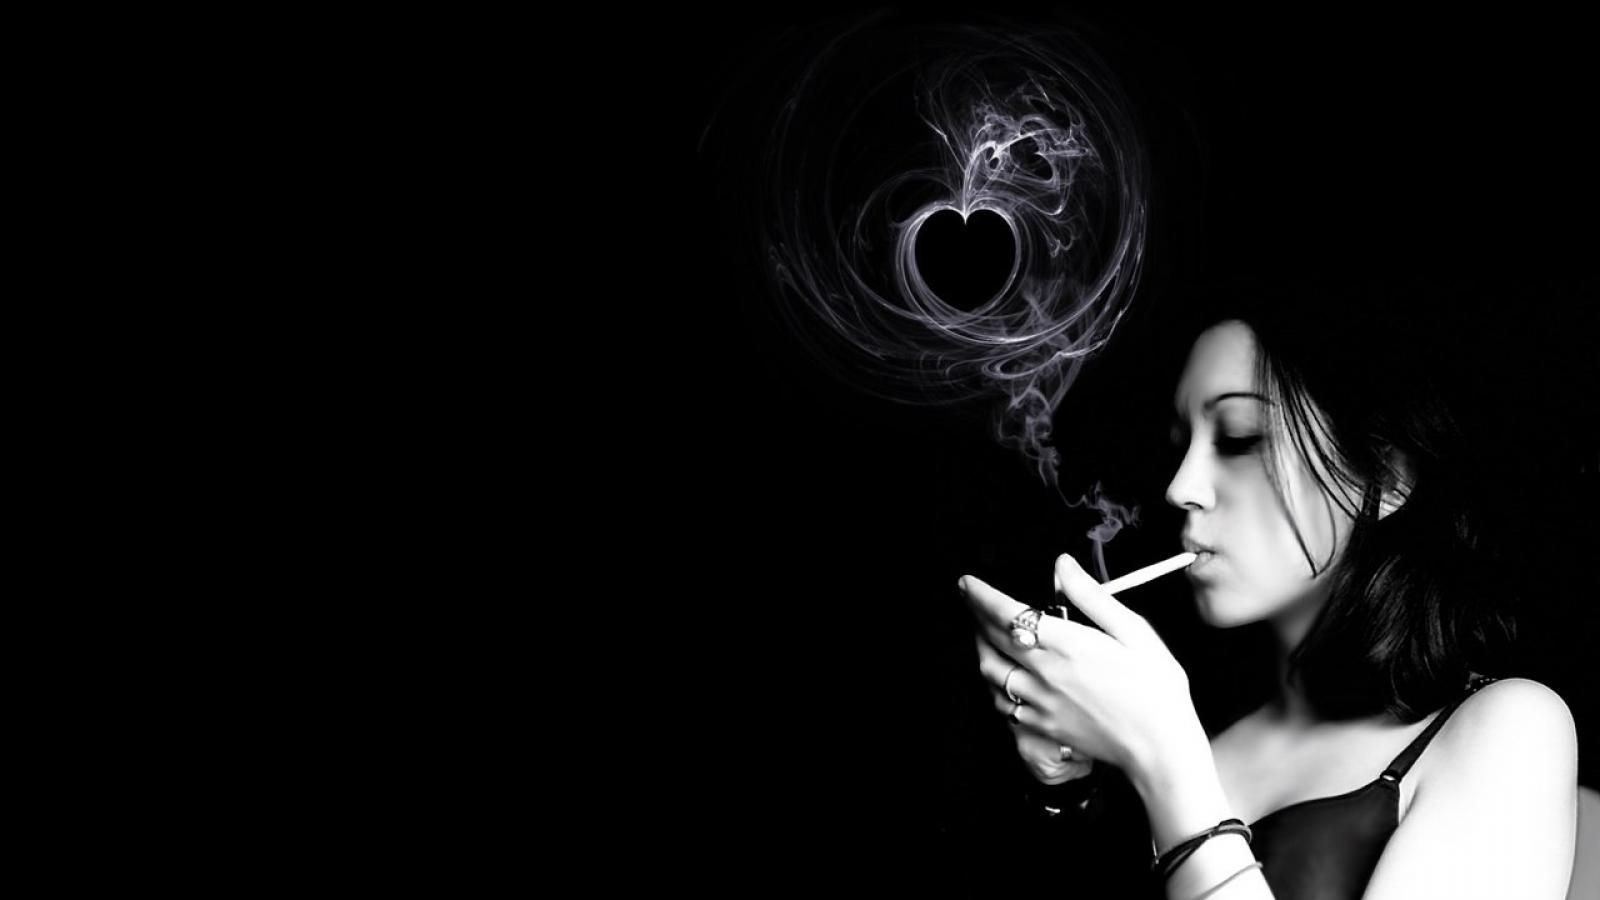 Awesome smoke girl monochrome hd wallpaper - - HQ Desktop